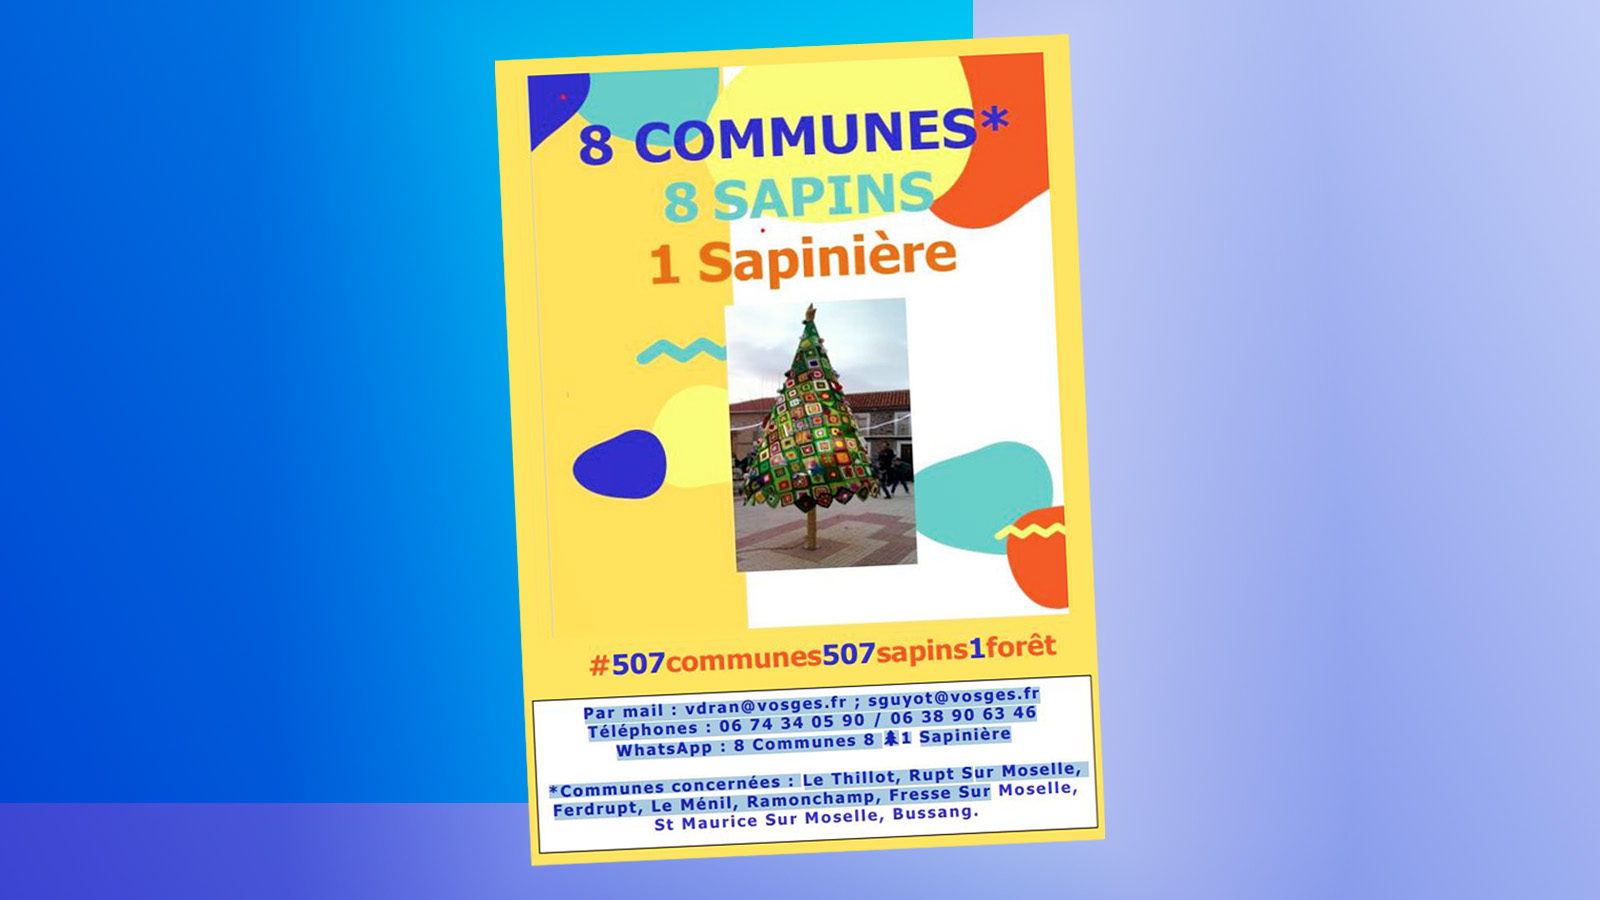 « 8 Communes, 8 Sapins, 1 Sapinière » : Un beau projet de territoire inauguré ce samedi à Le Thillot